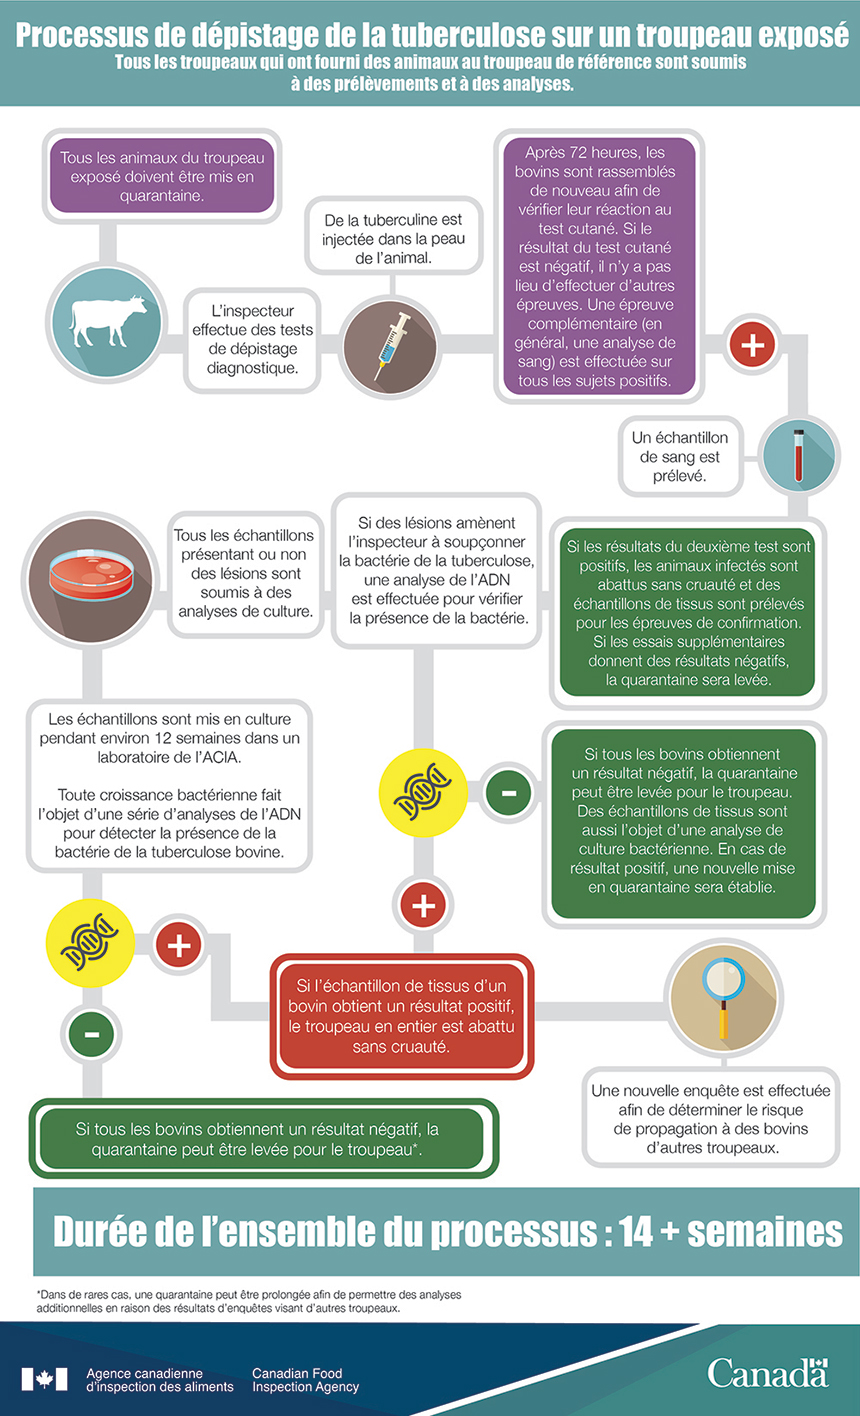 Infographie : Processus de dépistage de la tuberculose sur un troupeau retracé. Description ci-dessous.